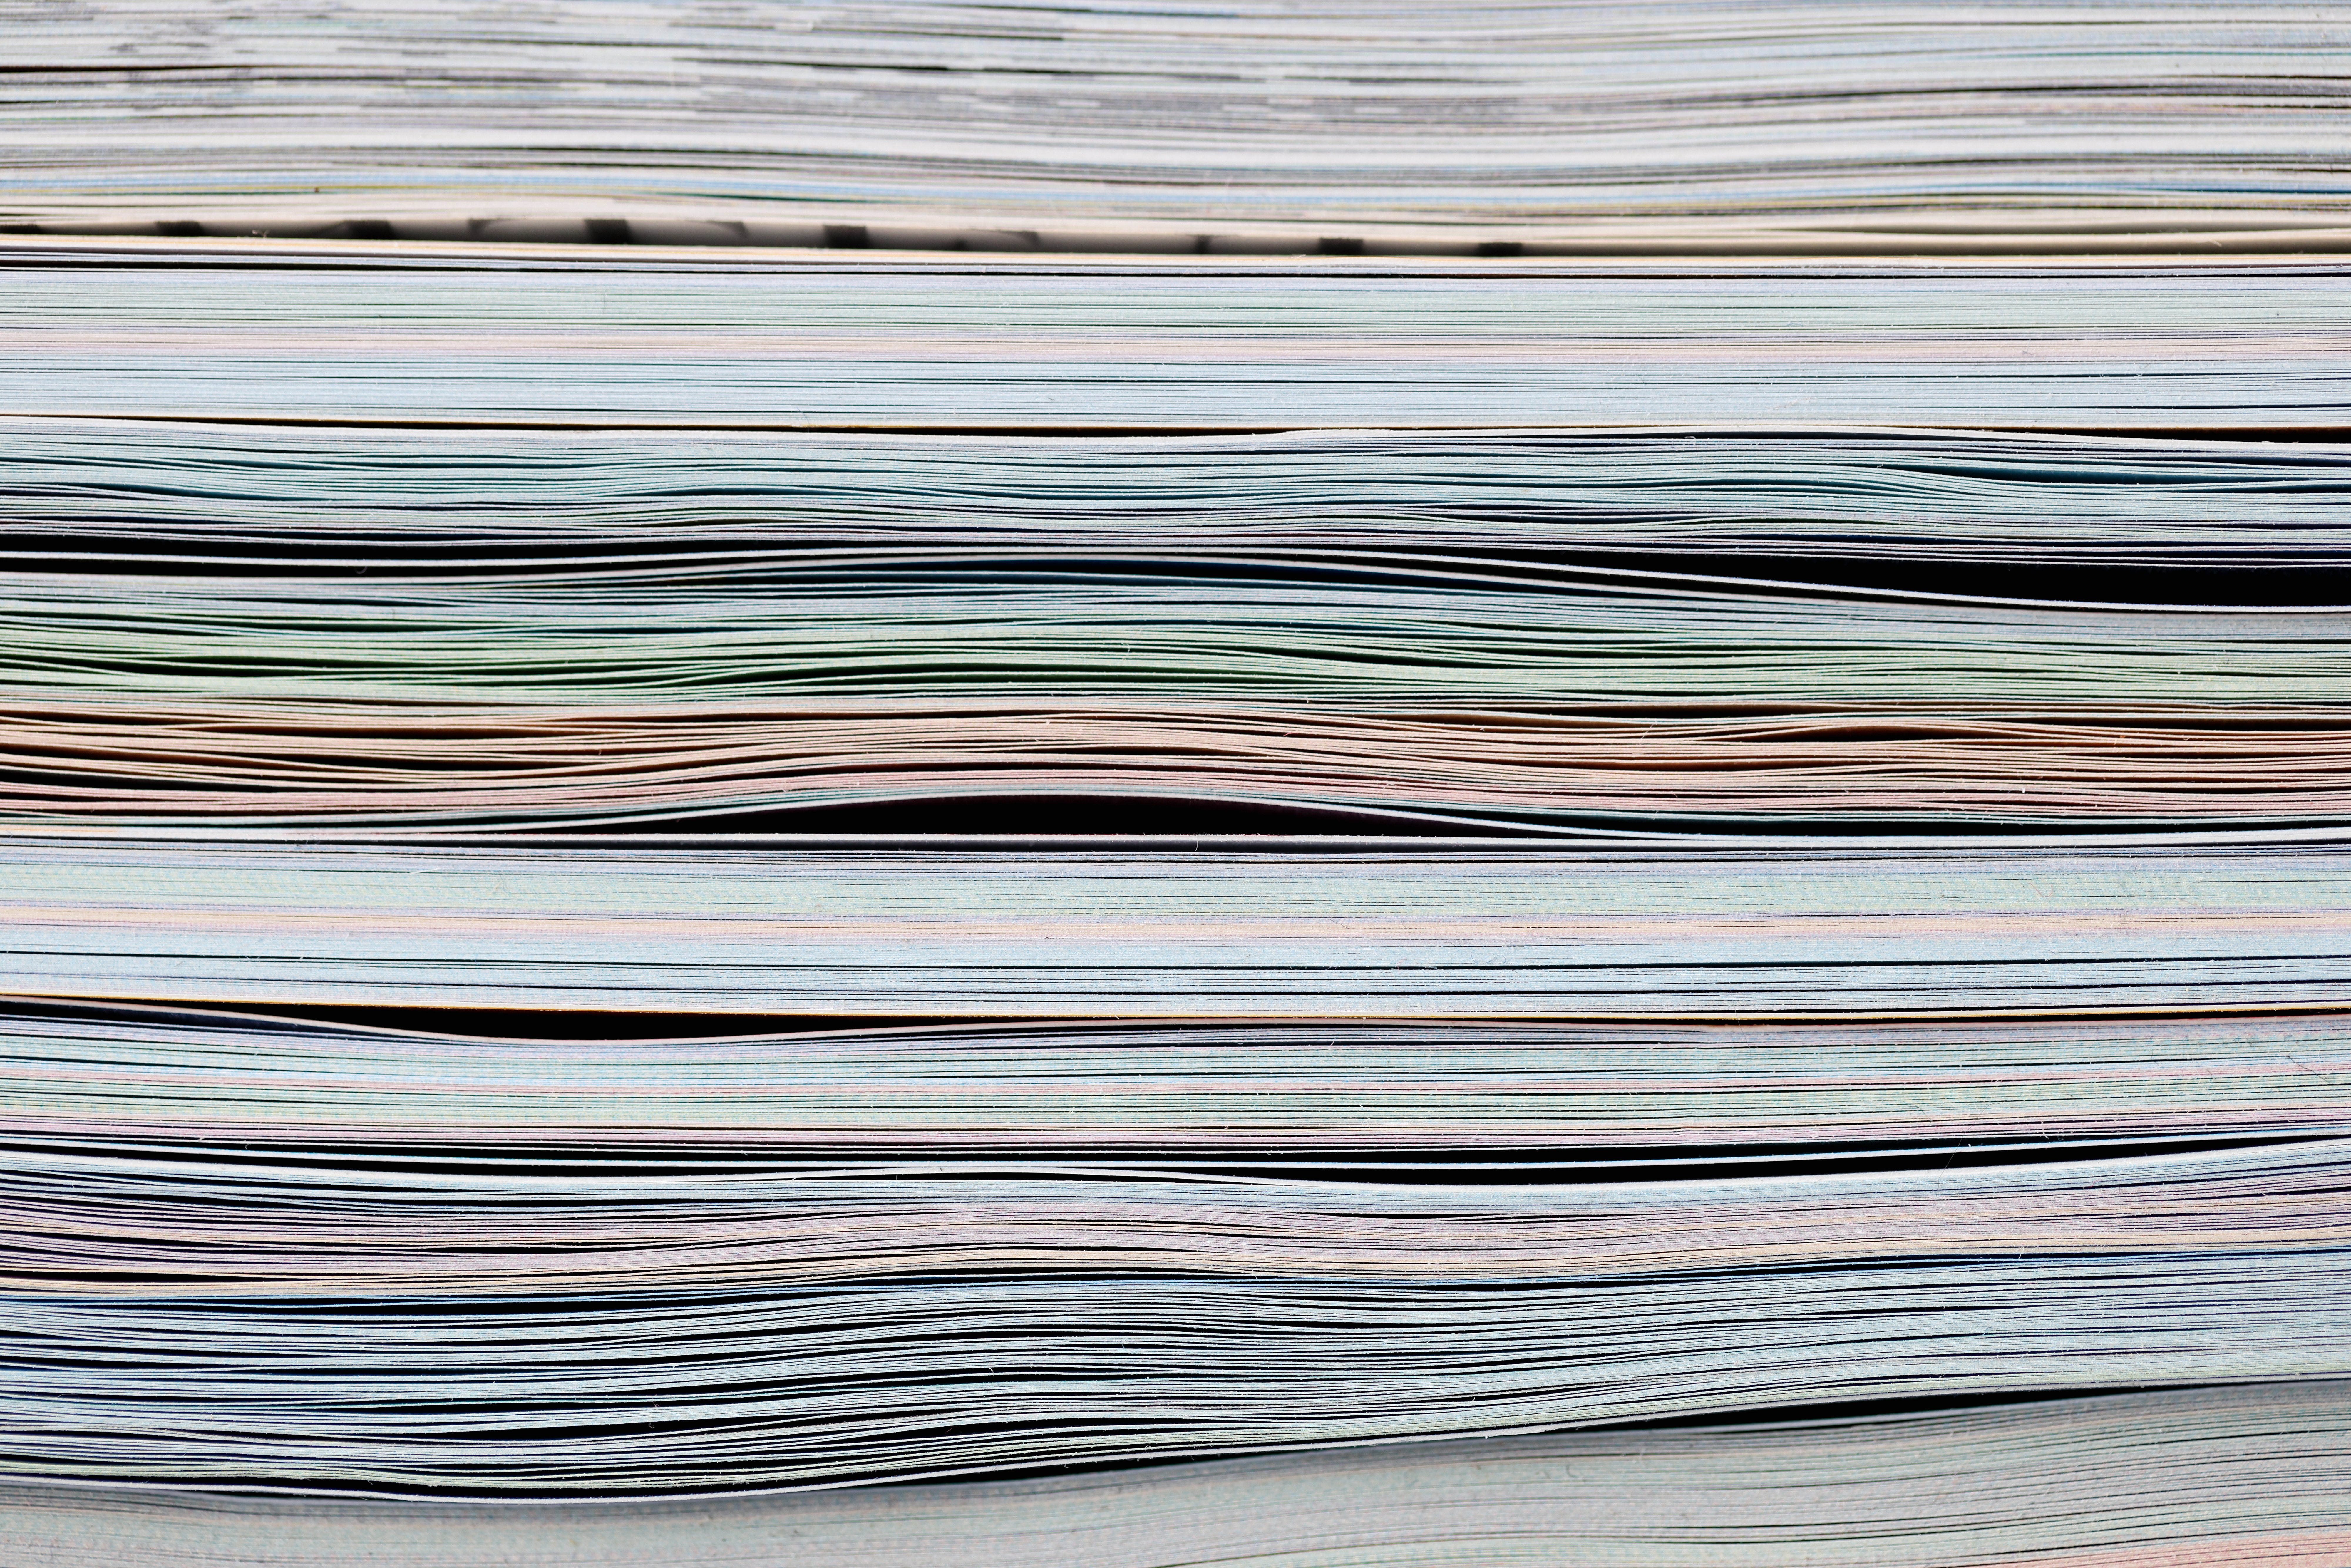 DK: Publikationer. Foto: Colourbox.dk| EN: Publications. Photo: Colourbox.dk